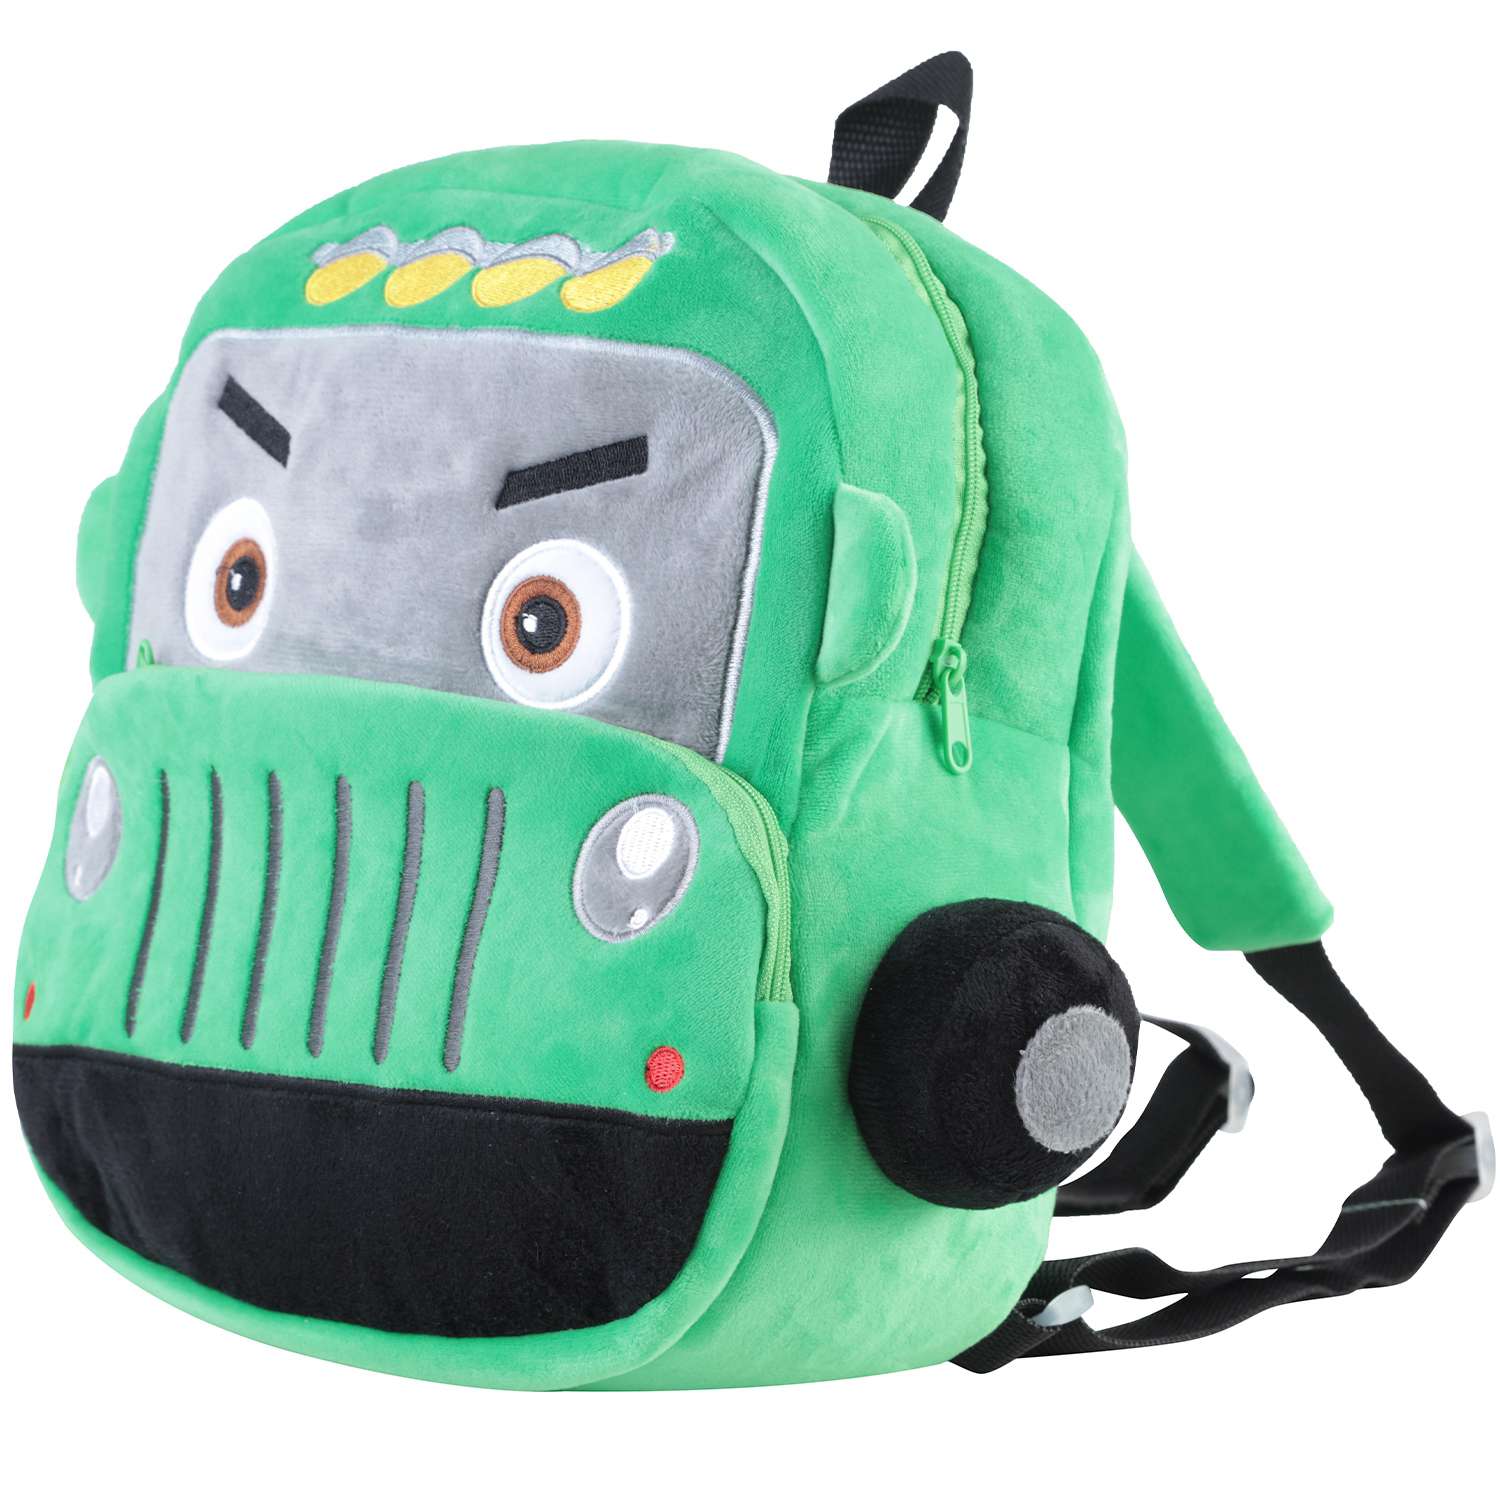 Рюкзак детский плюшевый 2501-145 Машинка 28*22*8см зеленый - Магнитогорск 